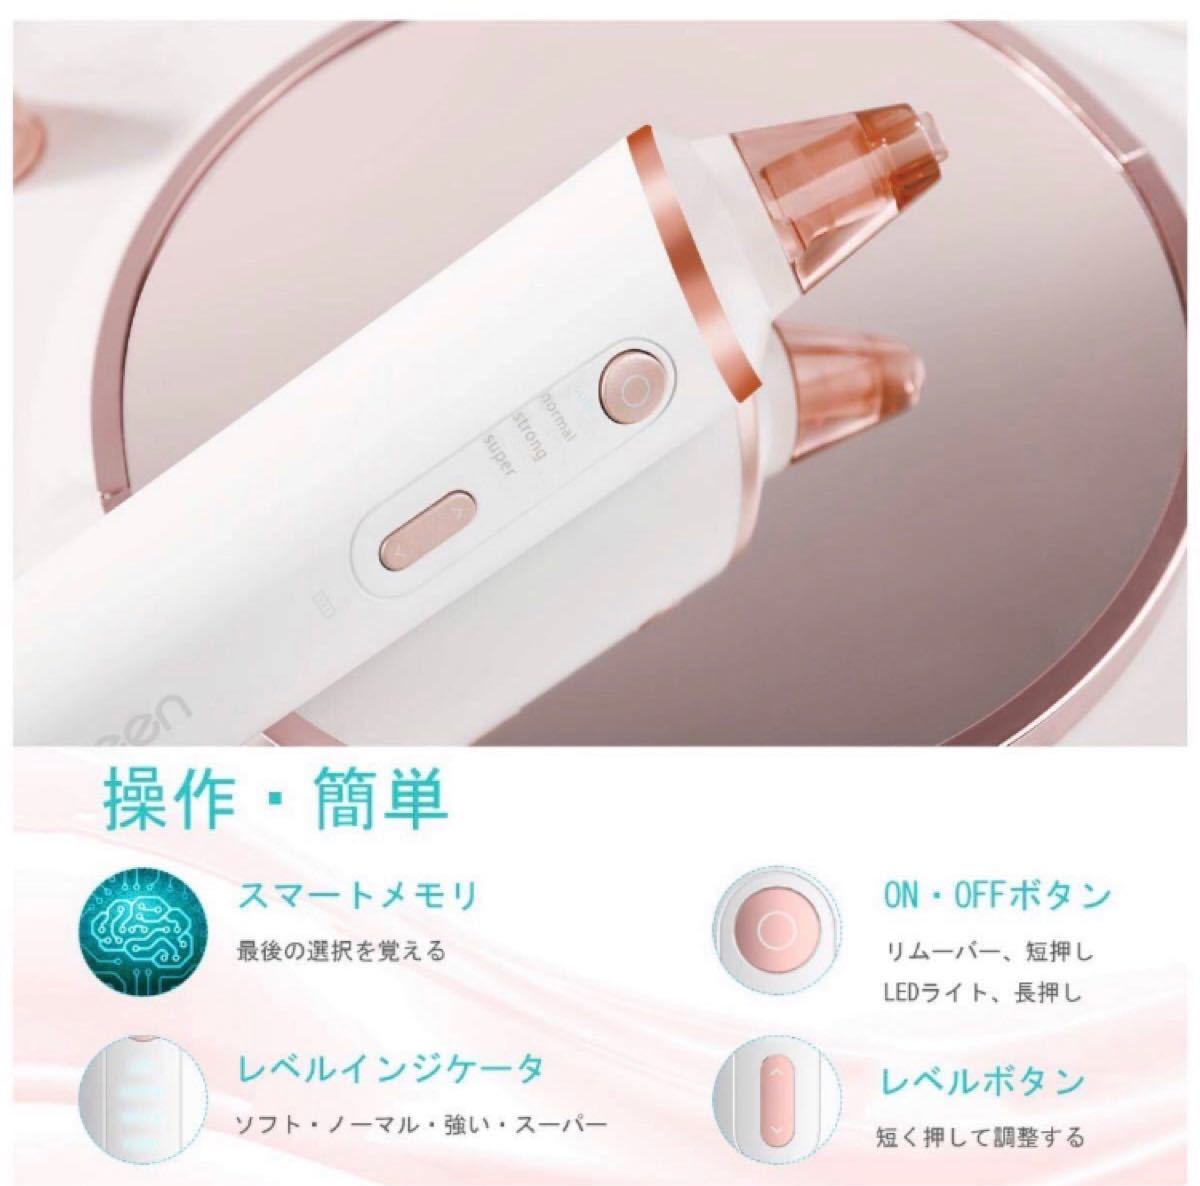 毛穴クリーナー 毛穴吸引器 美顔器 充電式 ワイヤレス LED  多機能美顔器